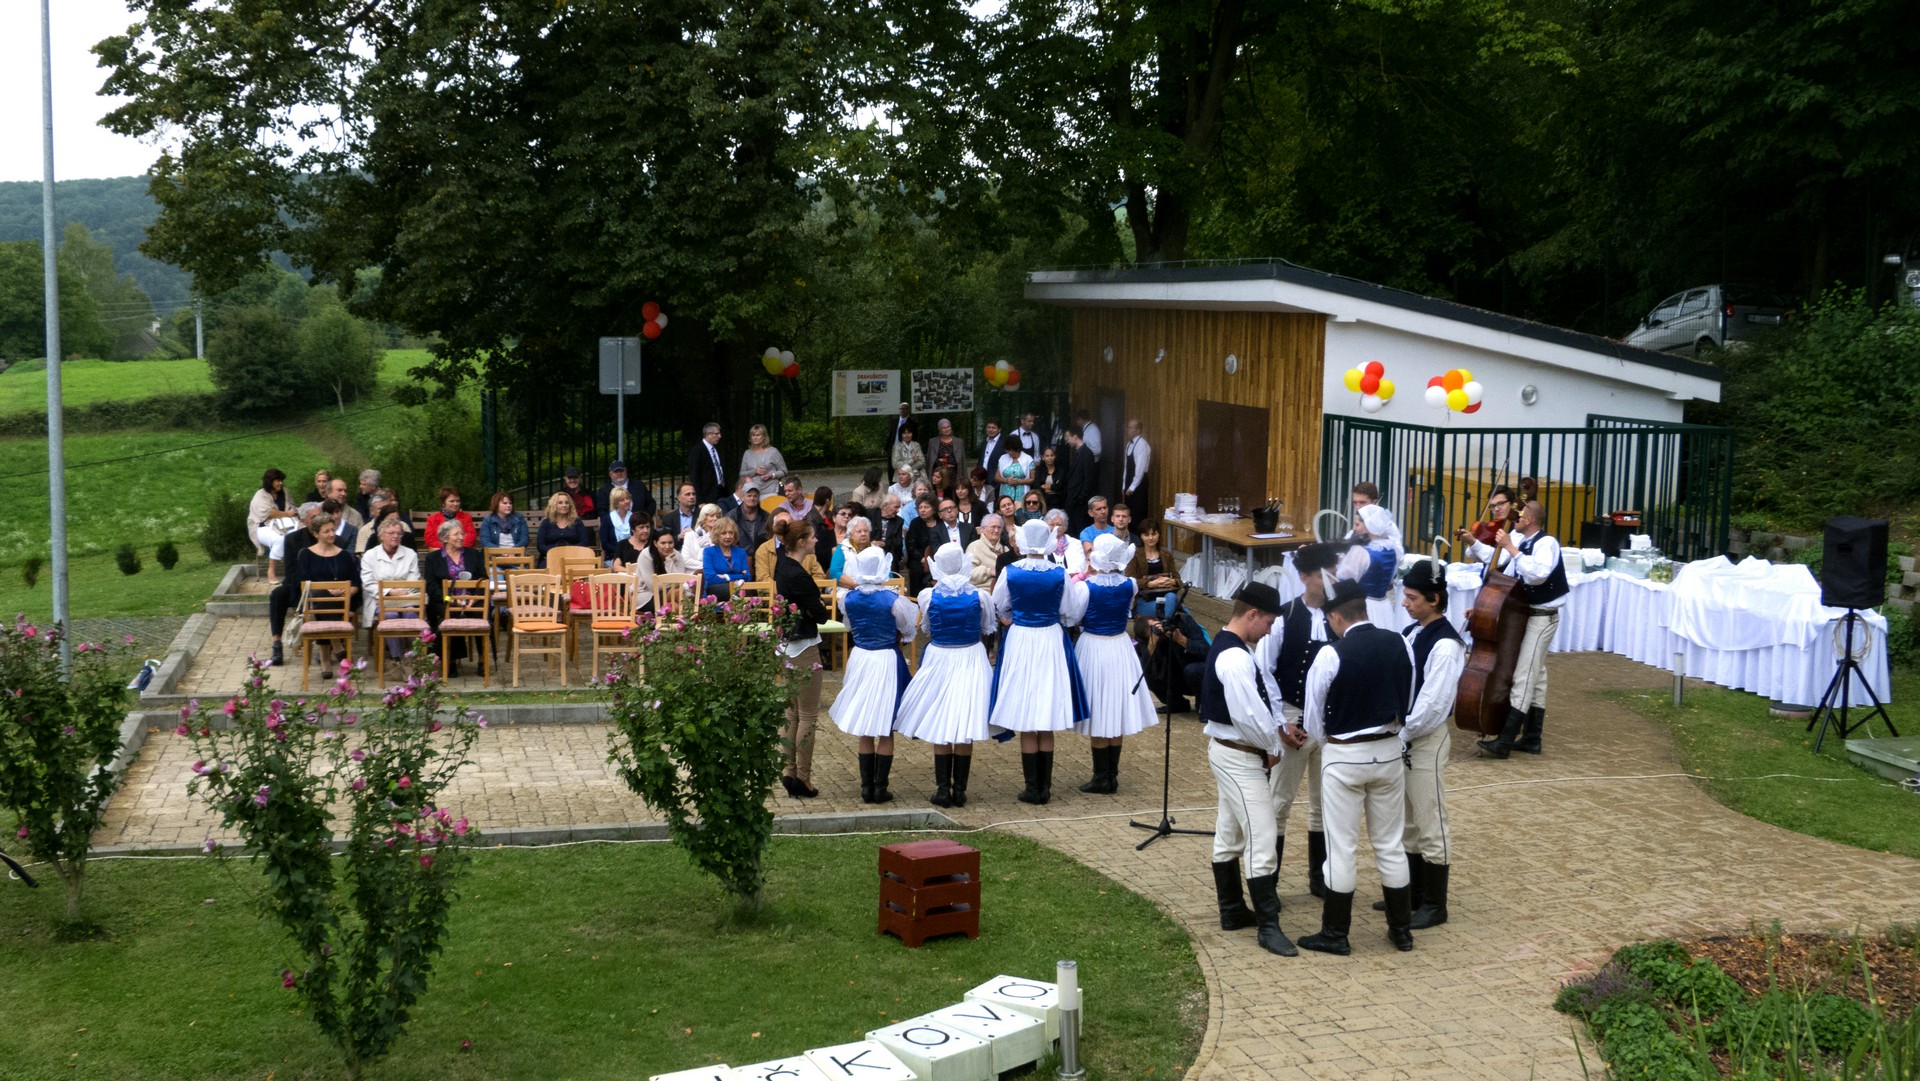 Oslava 5. výročia Komunitného centra Drahuškovo